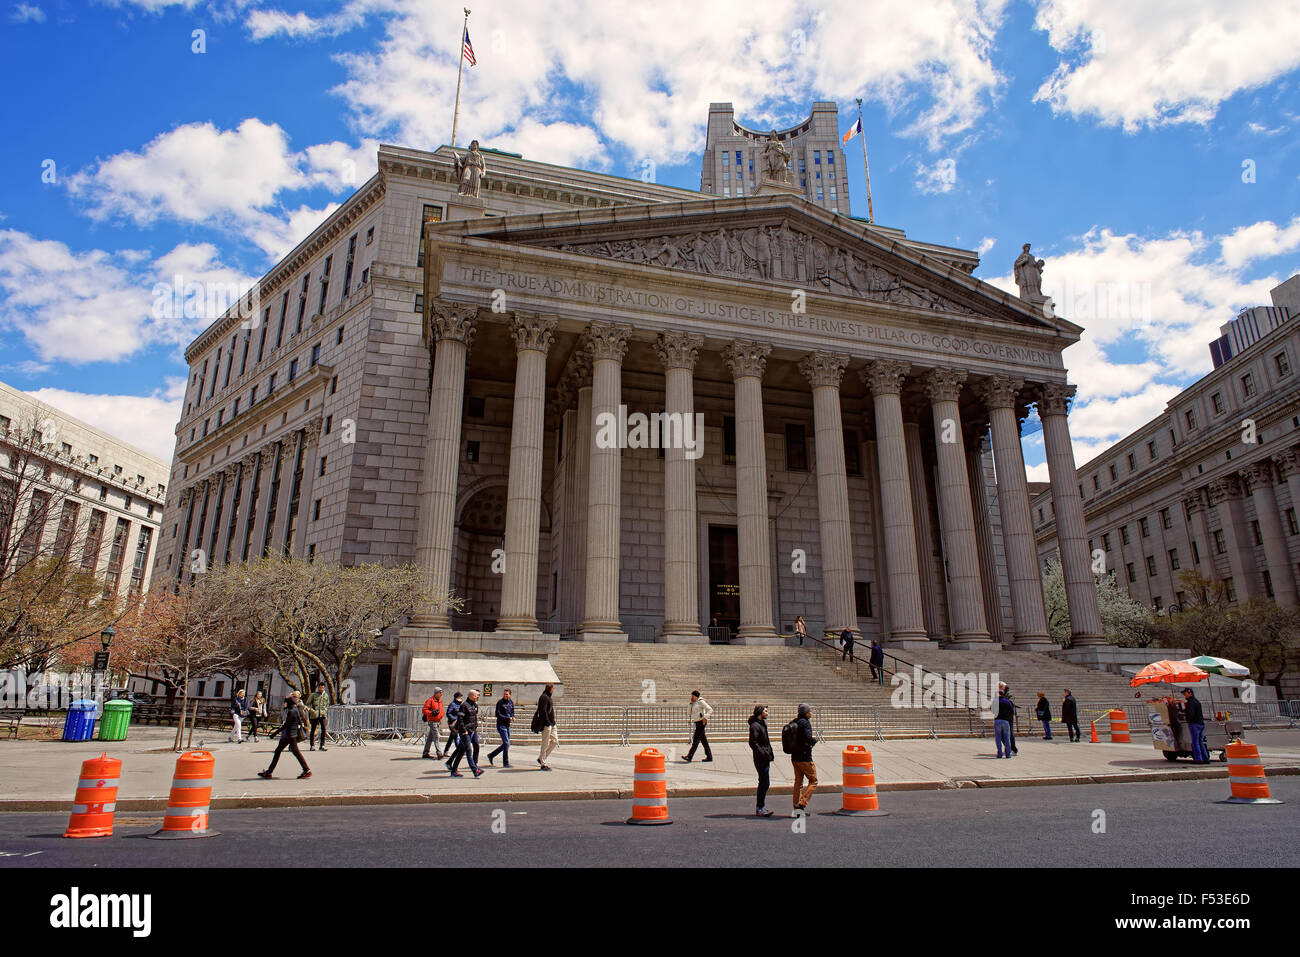 NEW YORK, USA - 25 avril 2015 : Nouveau bâtiment de la Cour suprême de l'État de New York dans le Lower Manhattan, New York, USA Banque D'Images